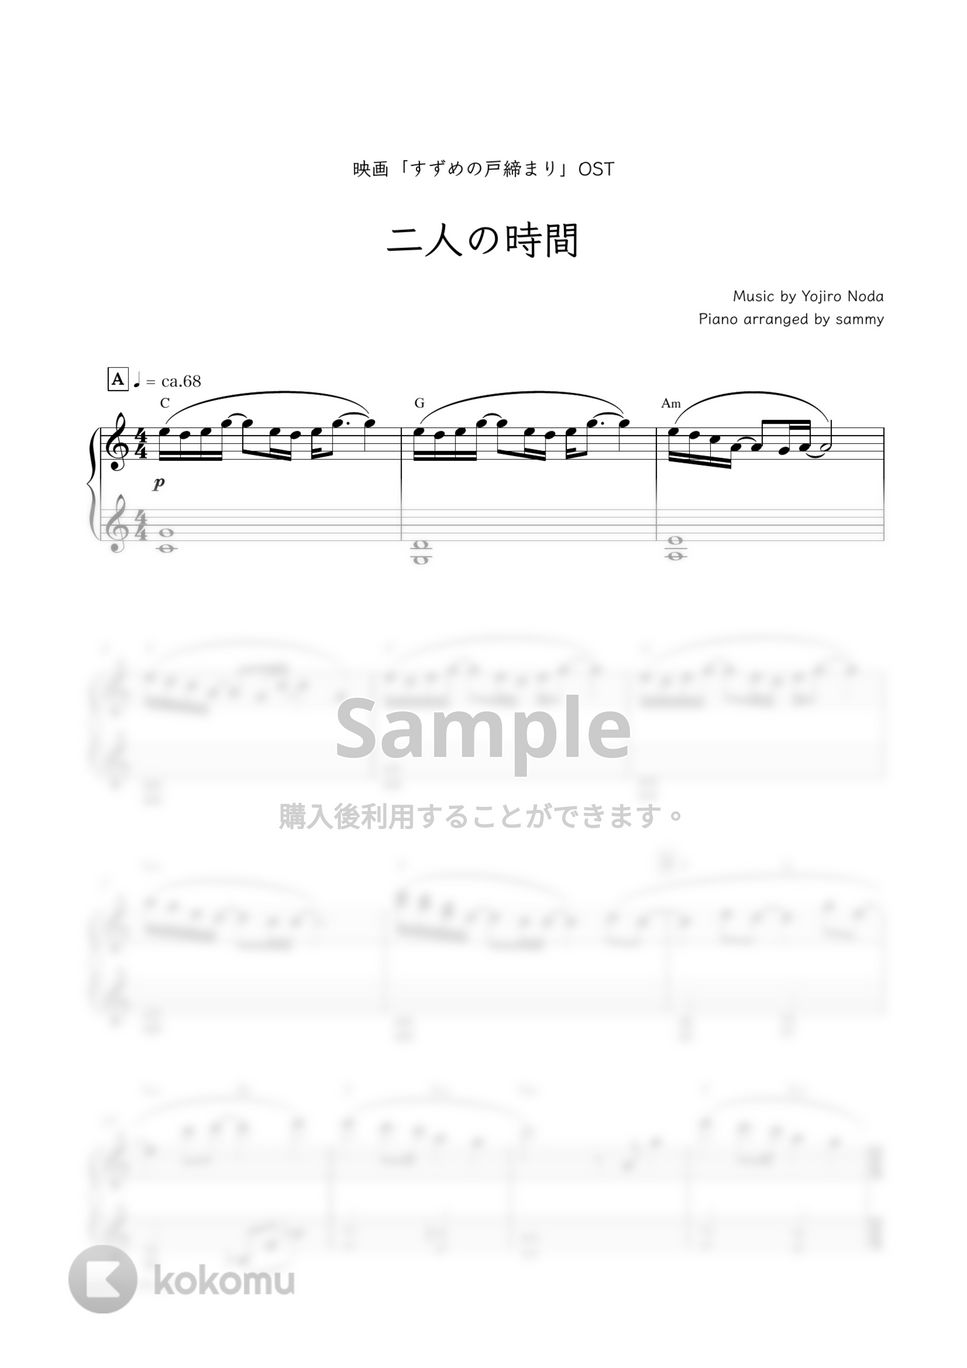 映画『すずめの戸締まり』OST - 二人の時間 by sammy